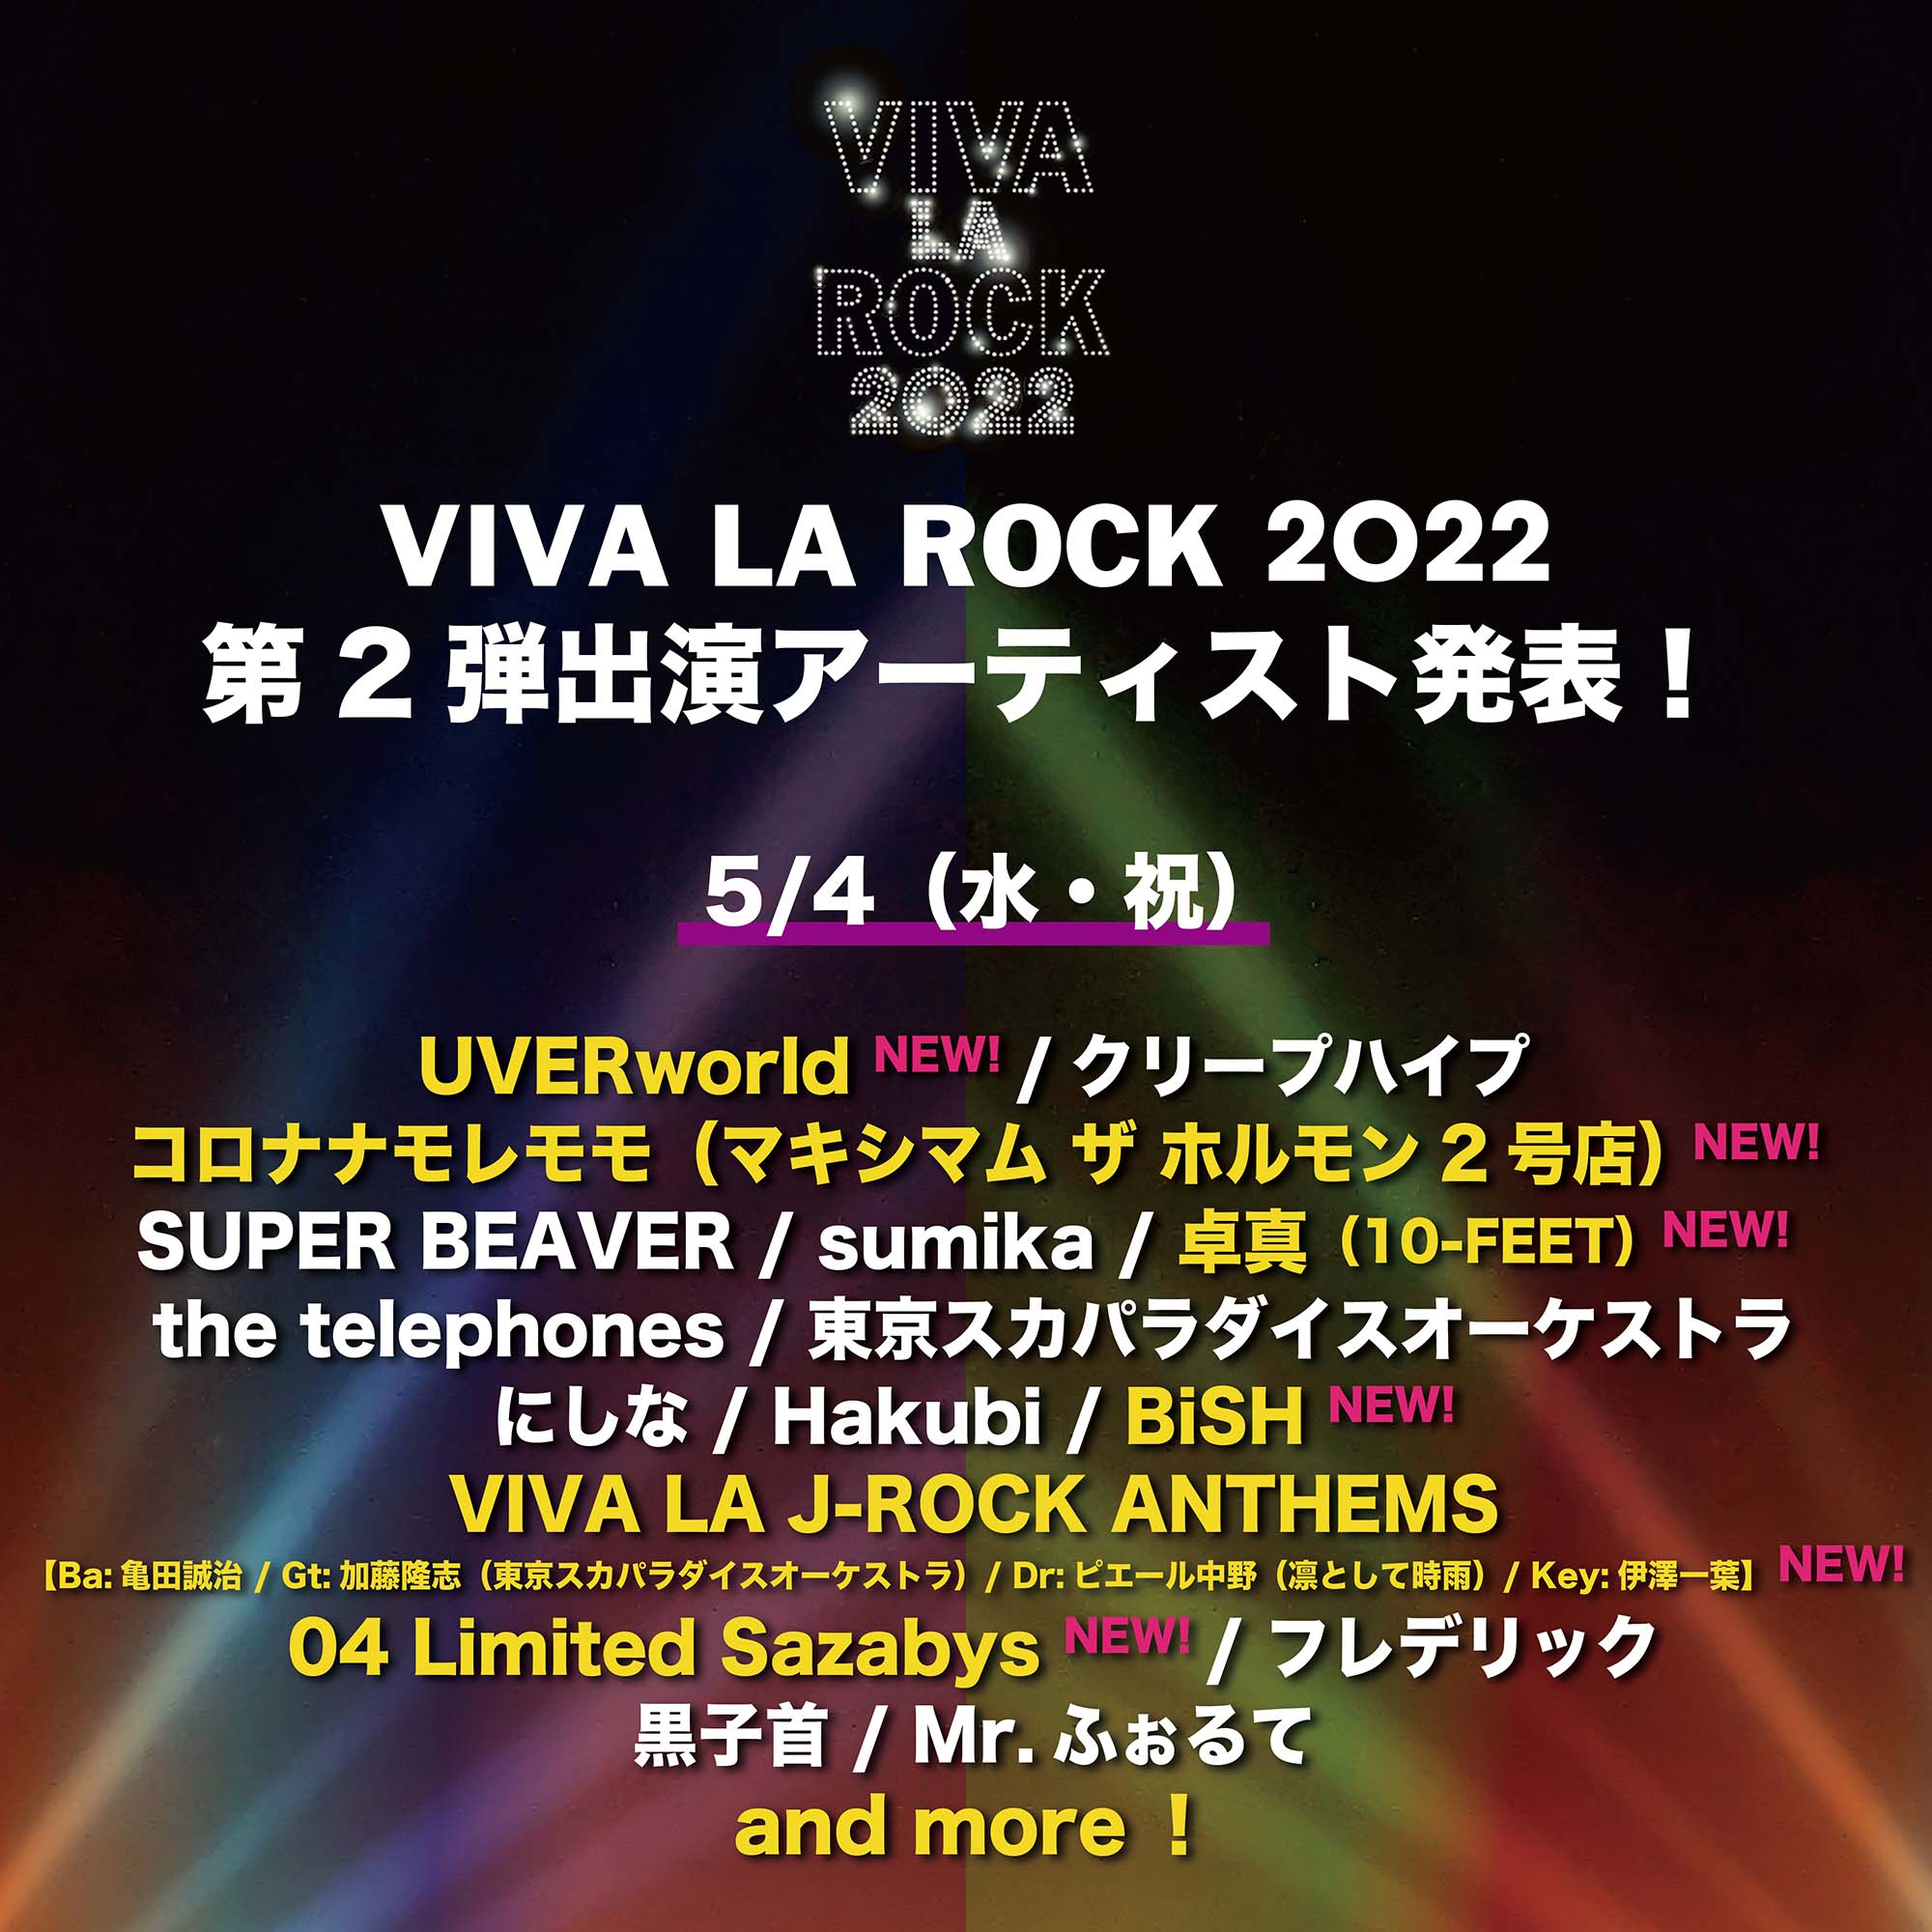 VIVA LA ROCK 2022 